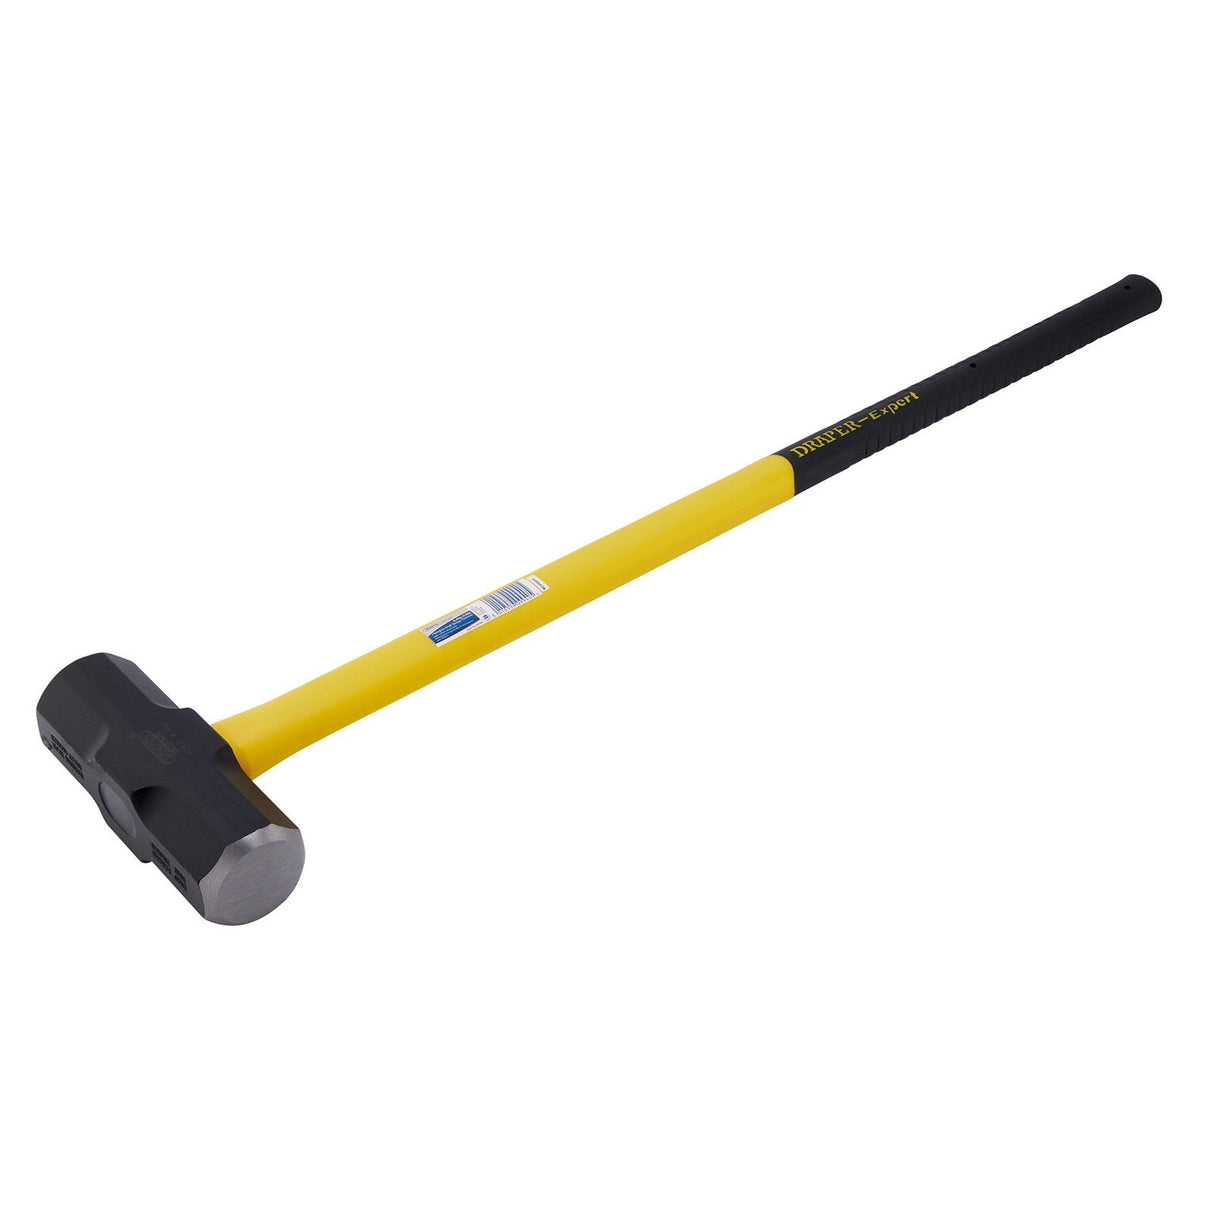 Draper Expert Fibreglass Shaft Sledge Hammer, 6.4Kg/14Lb - FG4/L - Farming Parts